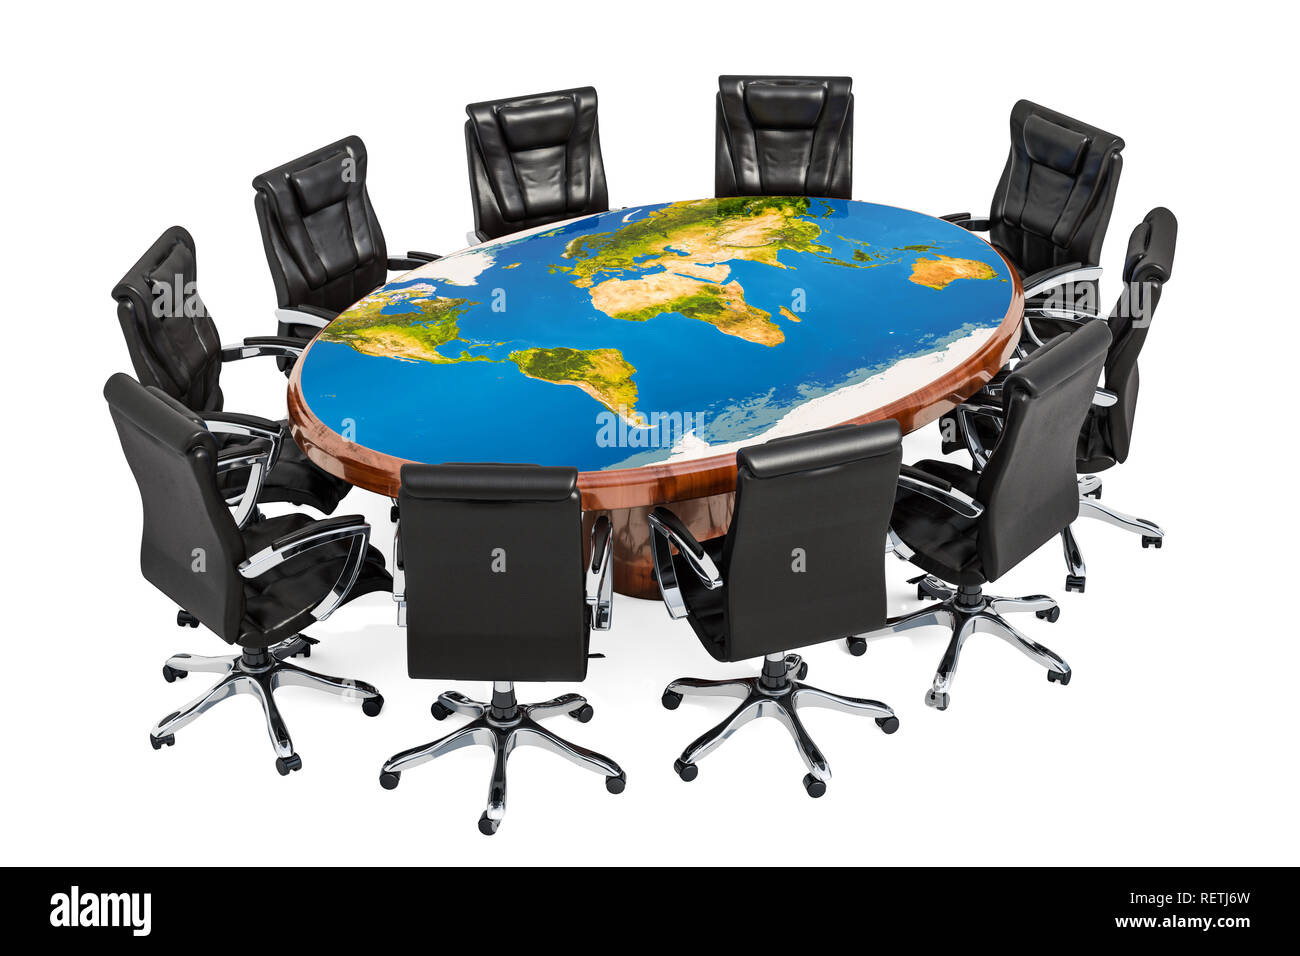 Réunion politique global concept. Table ronde avec la texture de la Terre  et des fauteuils autour de la carte, rendu 3D Photo Stock - Alamy